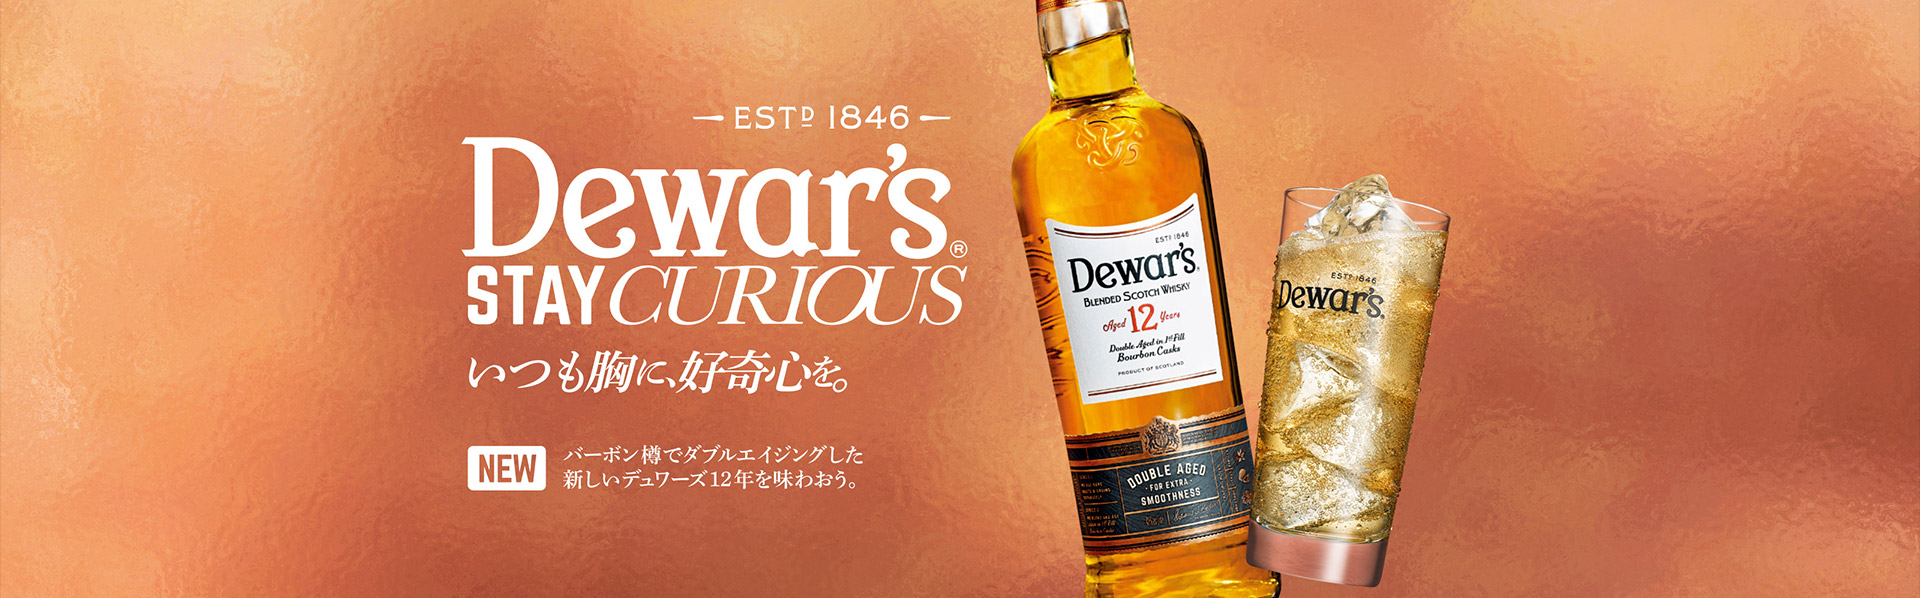 Dewar's -Est 1846-　STAY CURIOUS　いつも胸に好奇心を。　NEW　バーボン樽でダブルエイジングした新しいデュワーズ12年を味わおう。